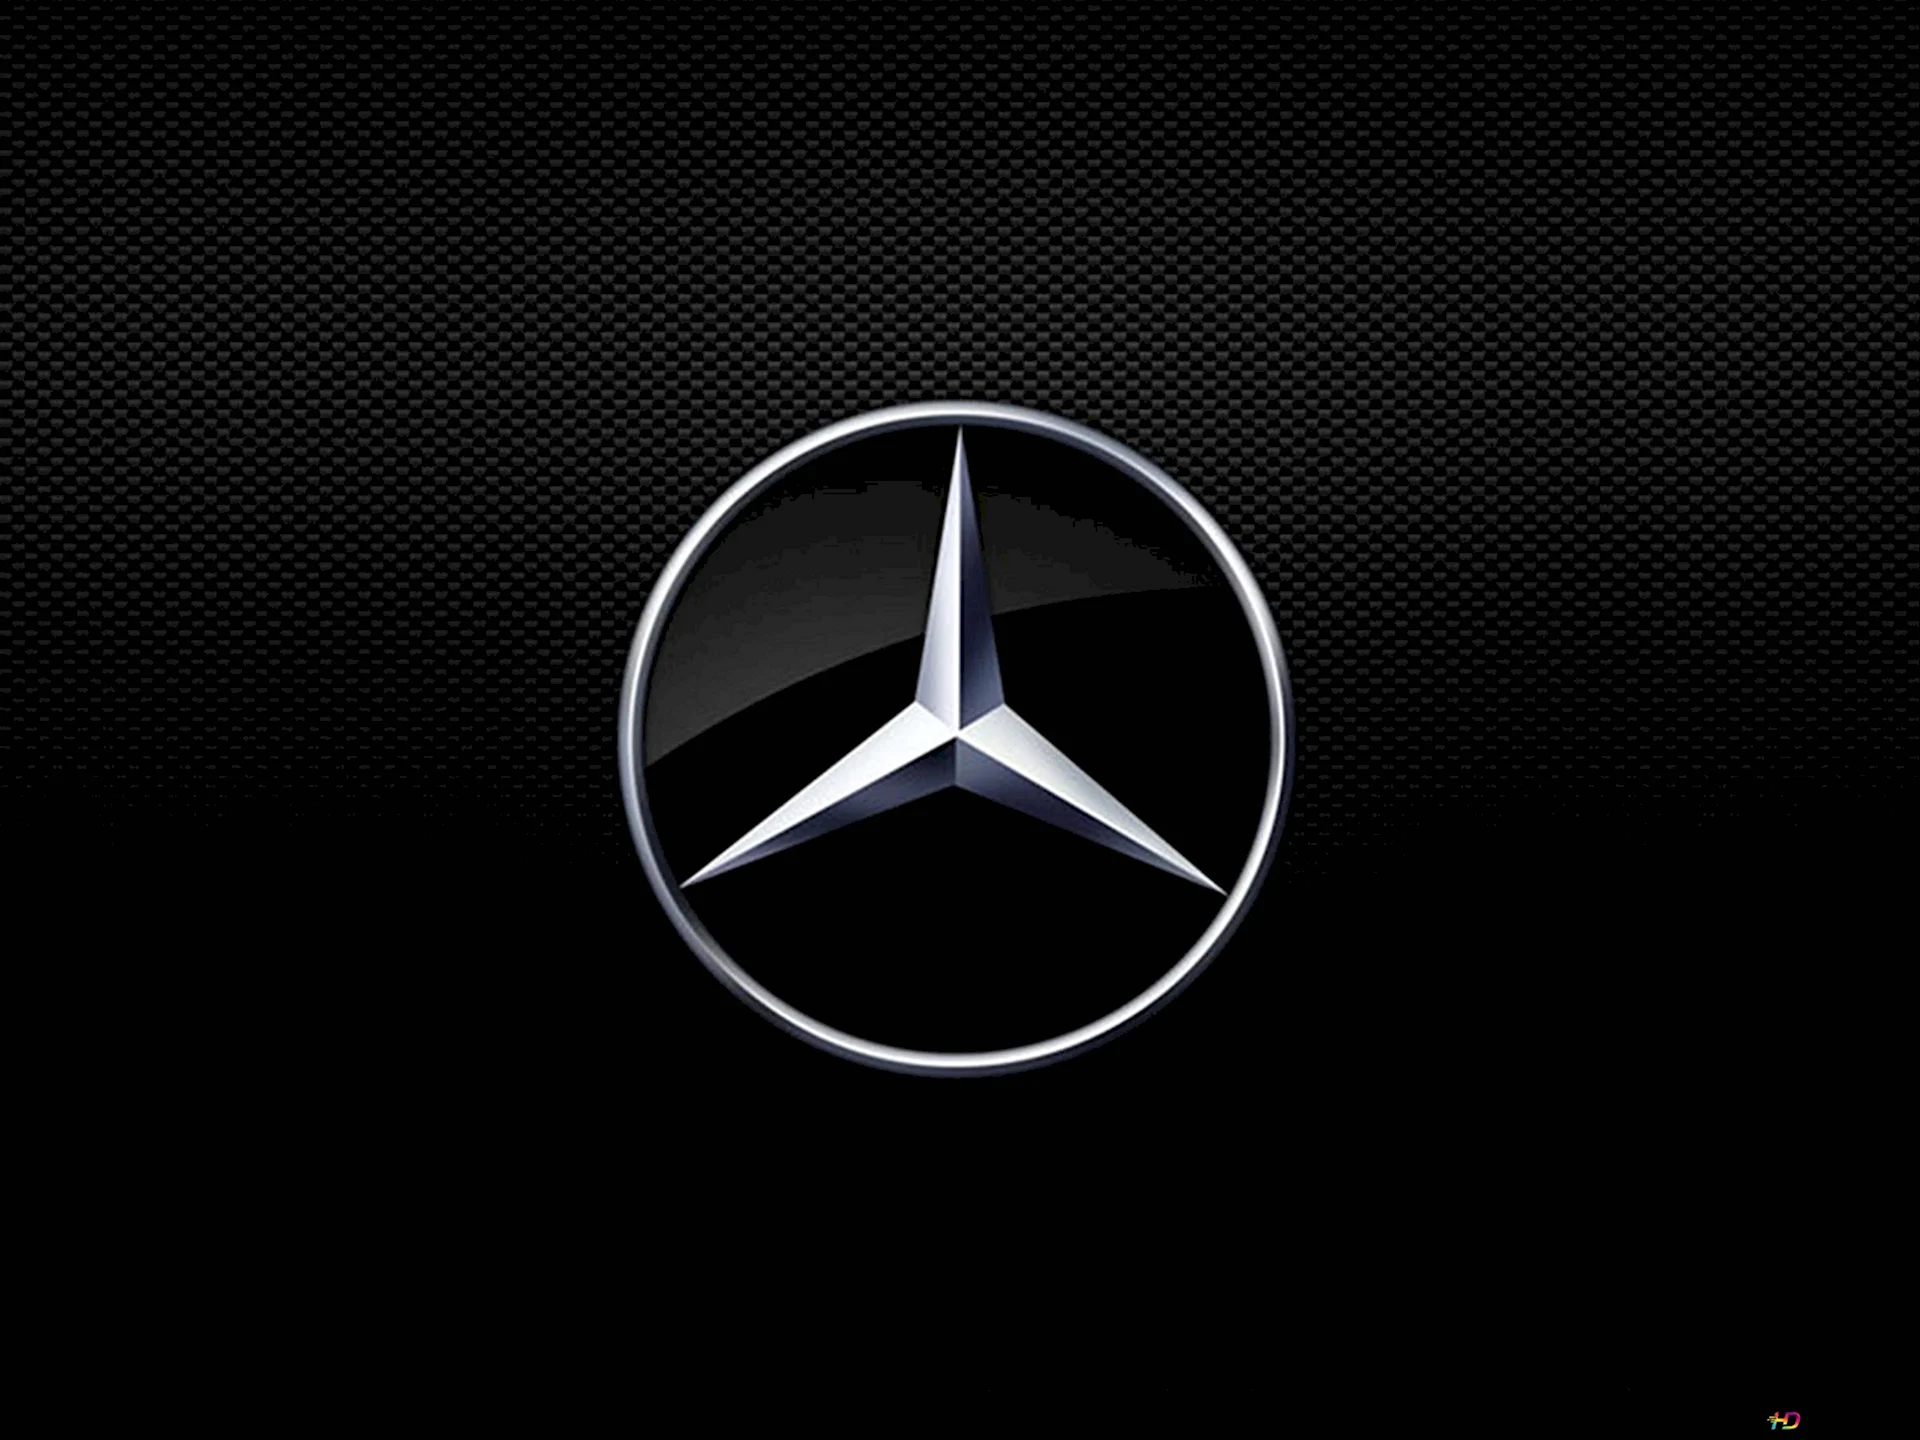 Mercedes Benz symbol